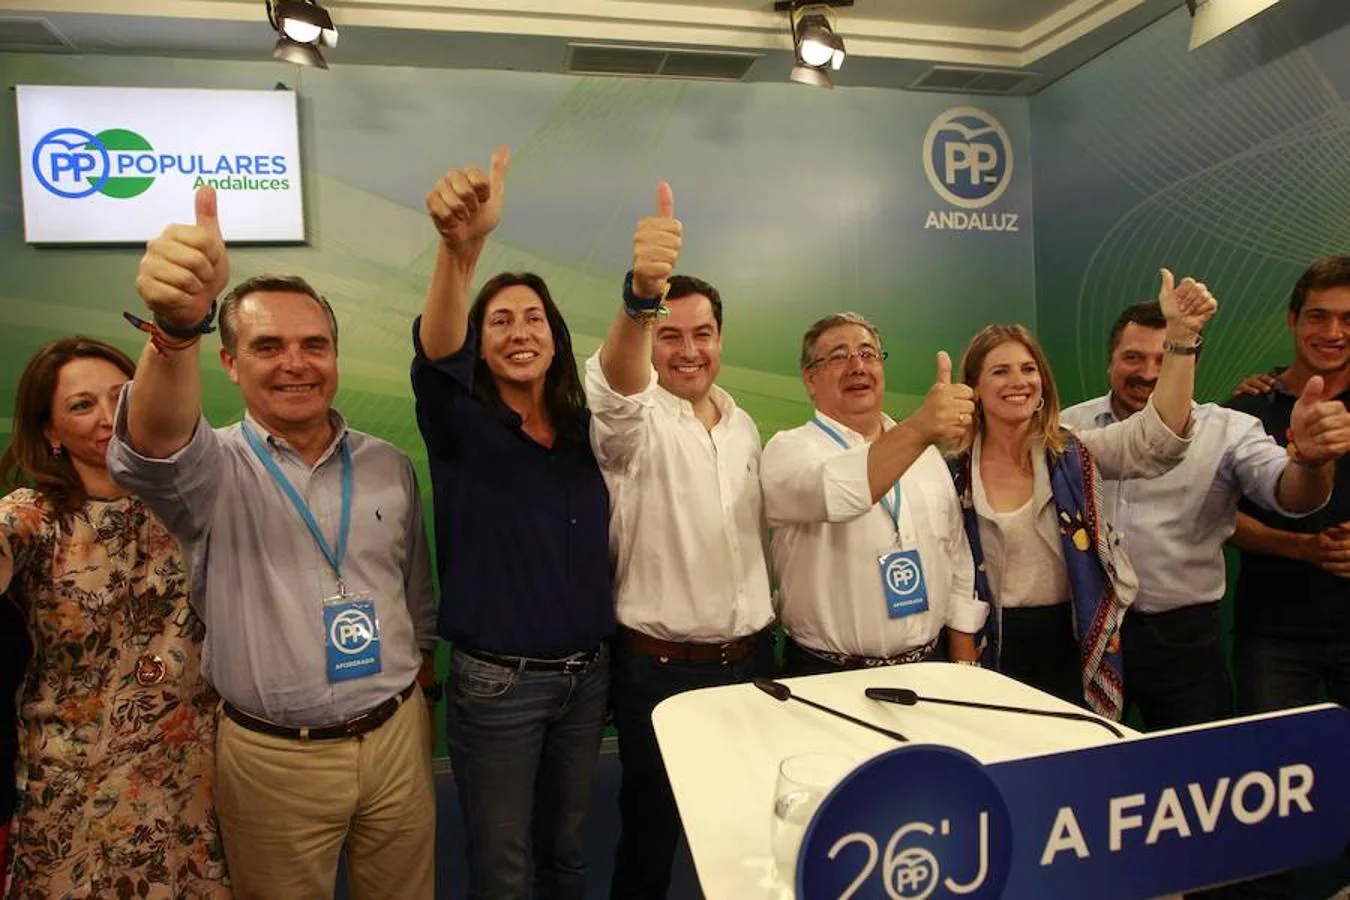 Celebraciones en la sede del PP en Andalucía, donde ha tenido lugar el verdadero "sorpasso" al superar los populares el partido socialista